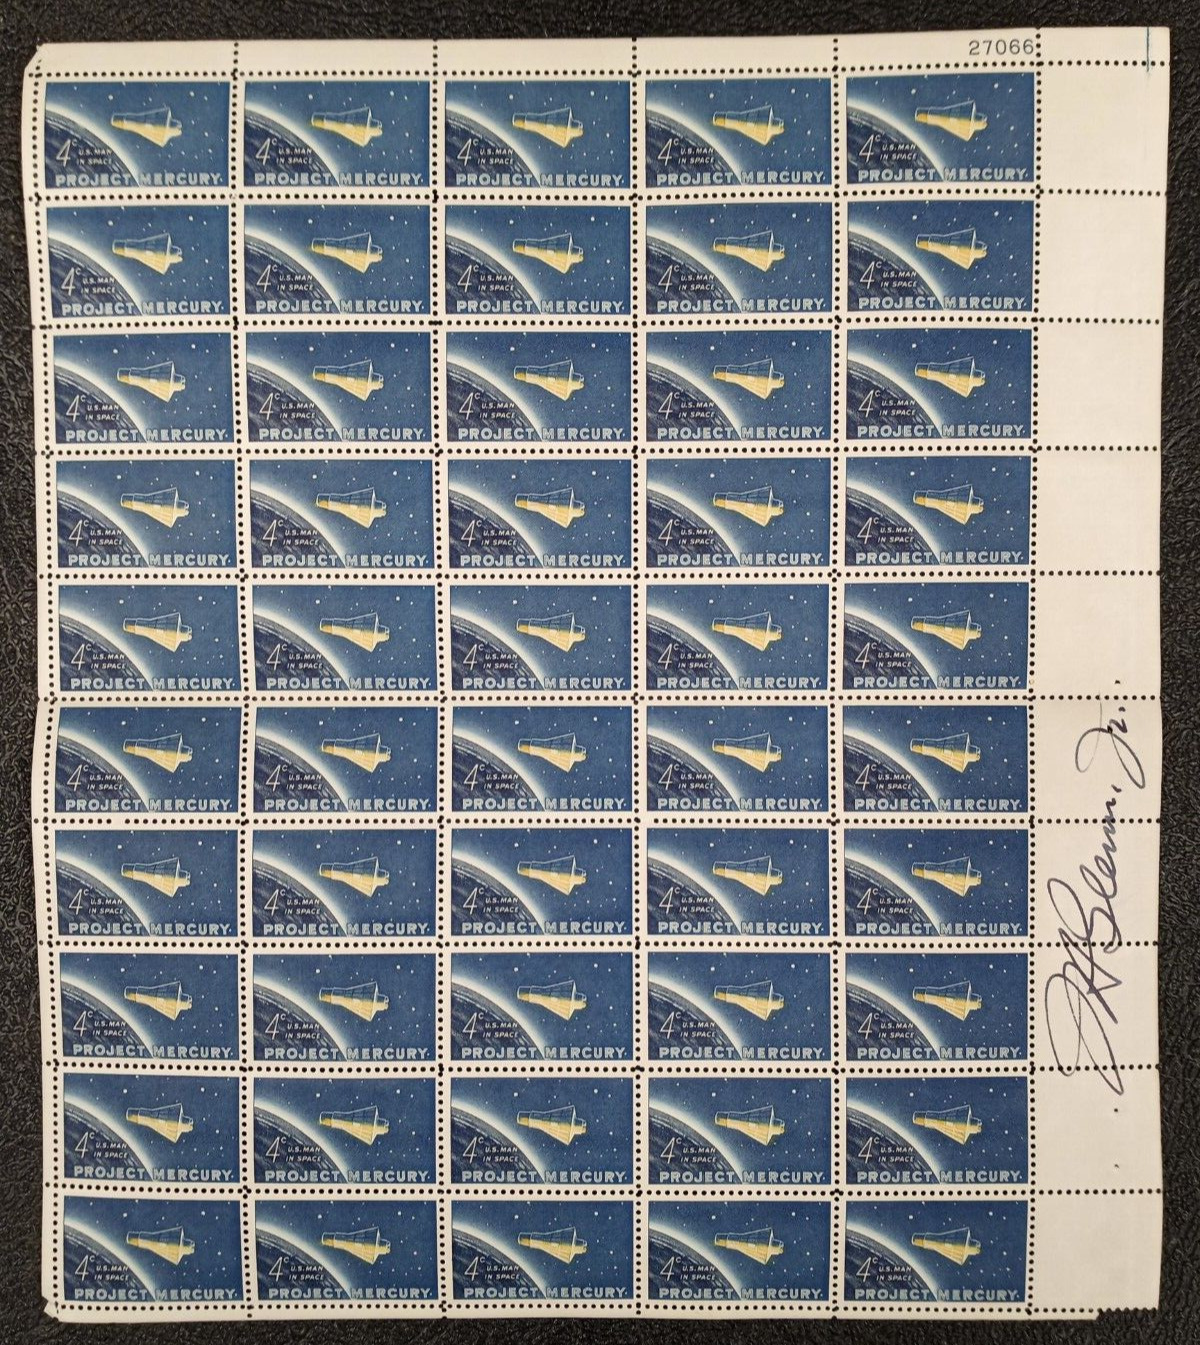 John Glenn Jr Signed USPS Stamp Sheet - 1962 \